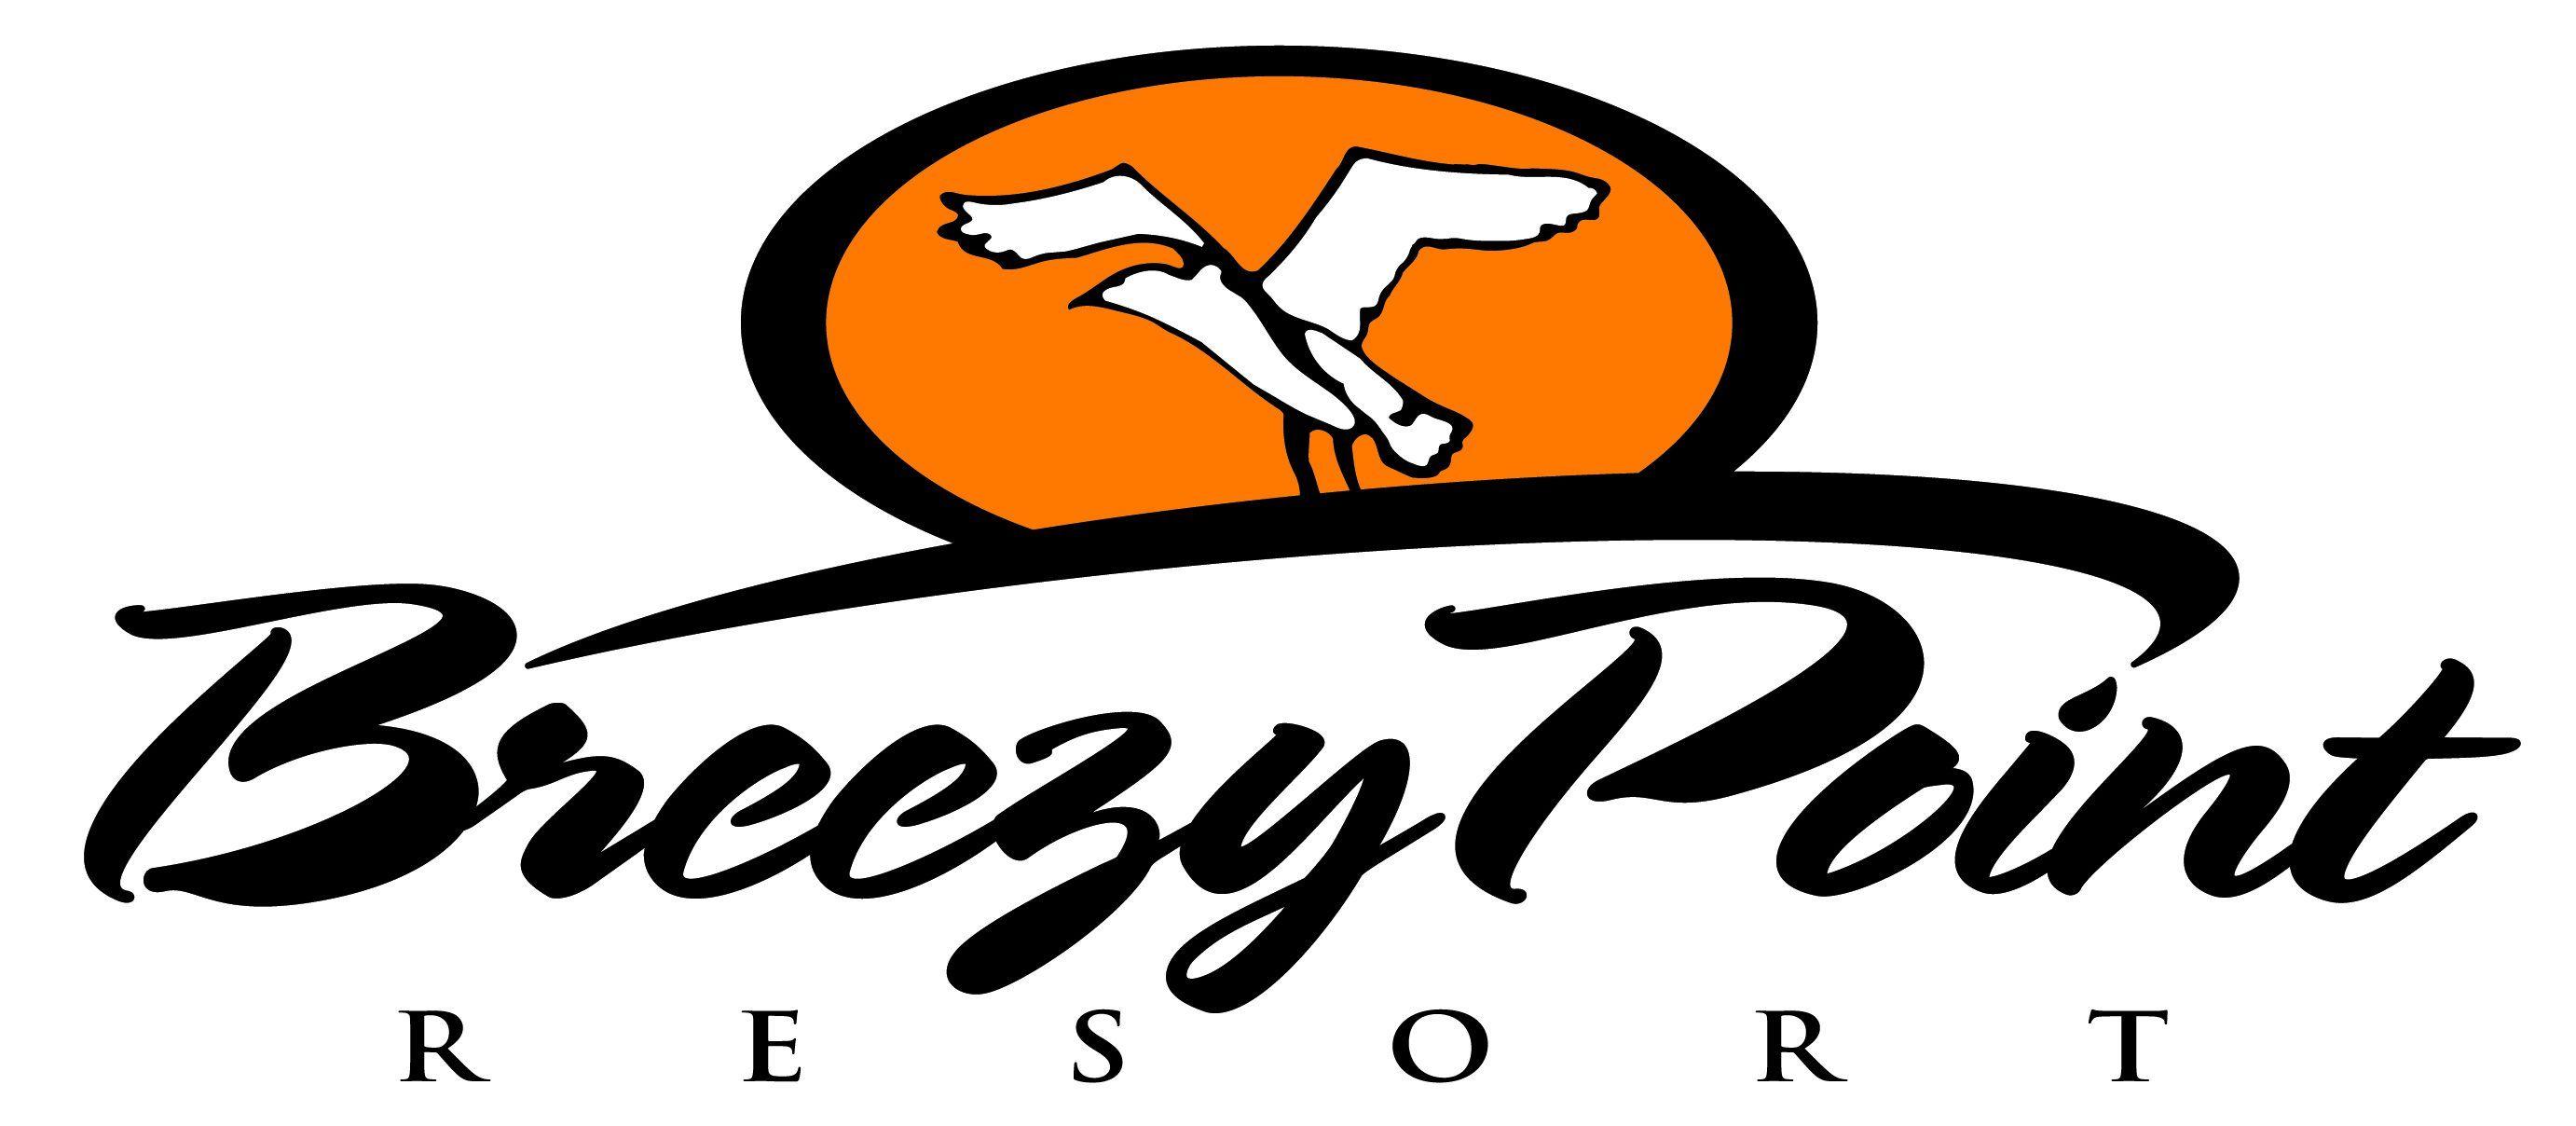 Breezy Logo - Breezy Point Resort Media - Logos Photos Floorplans | Breezy Point ...